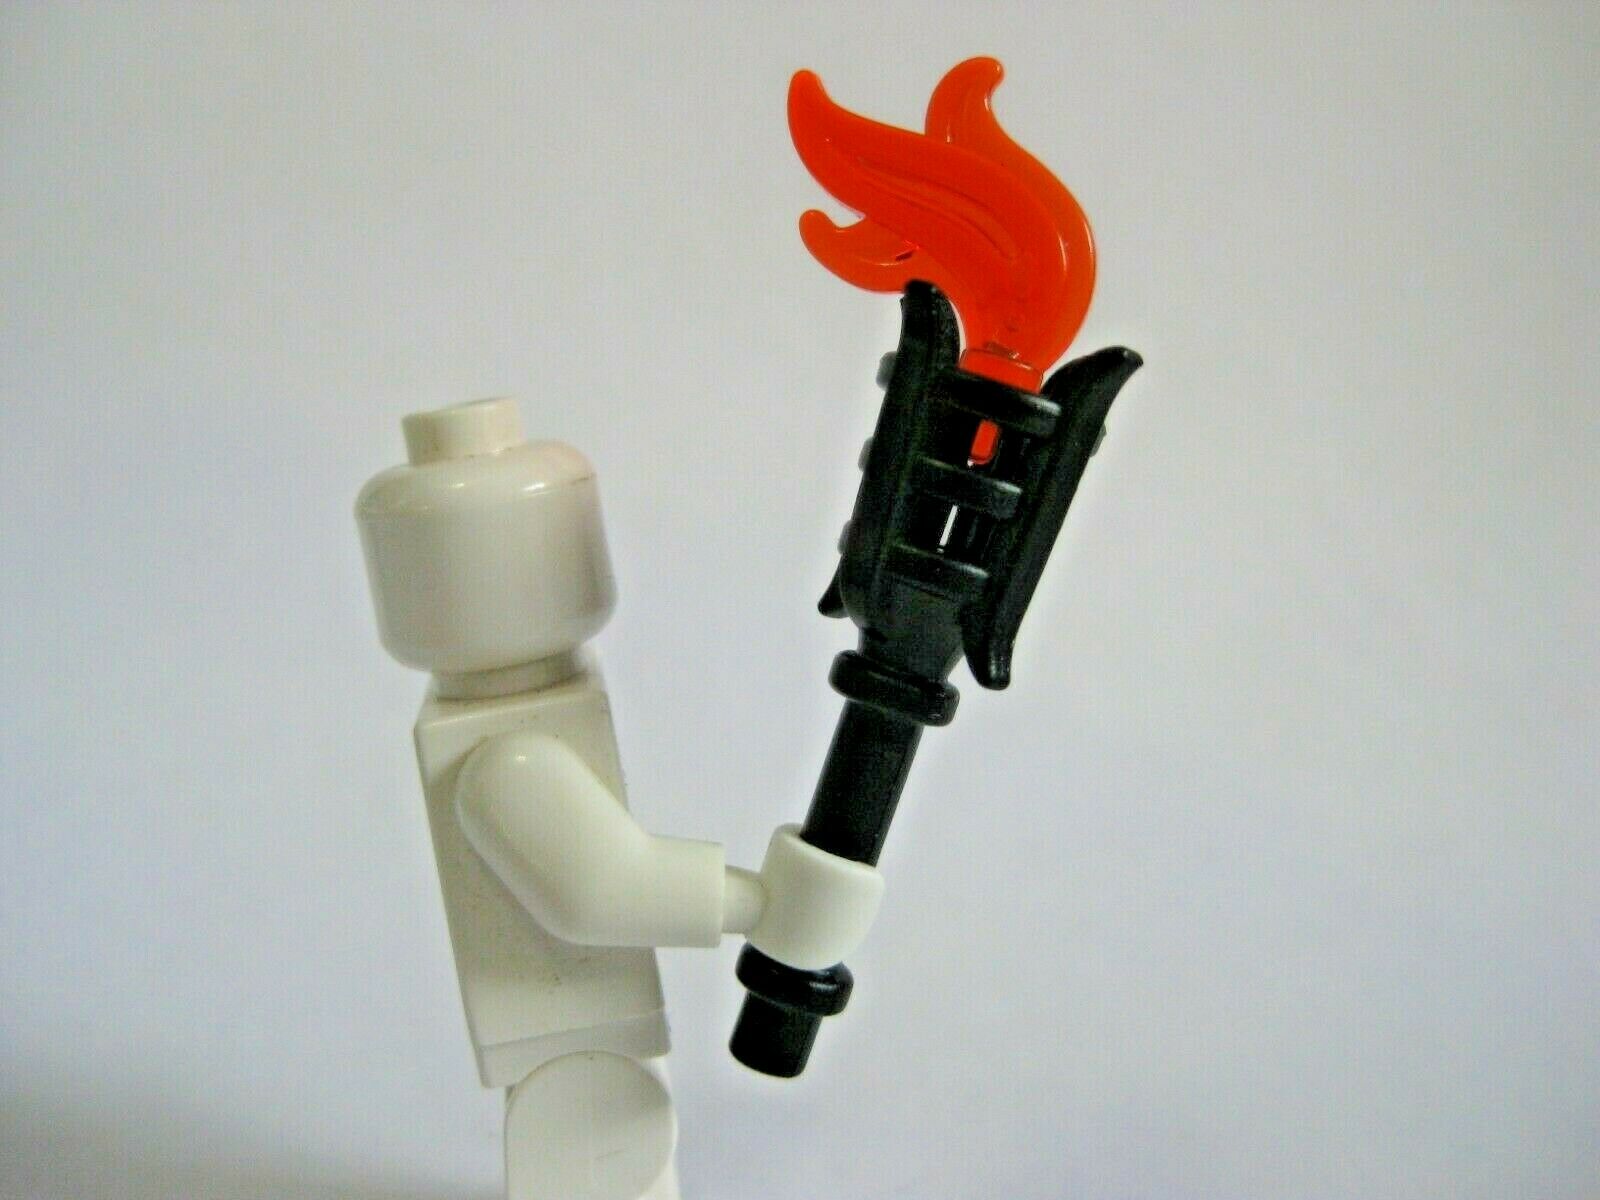 Un ur fabrique un lance-flamme avec 2500 briques de Lego